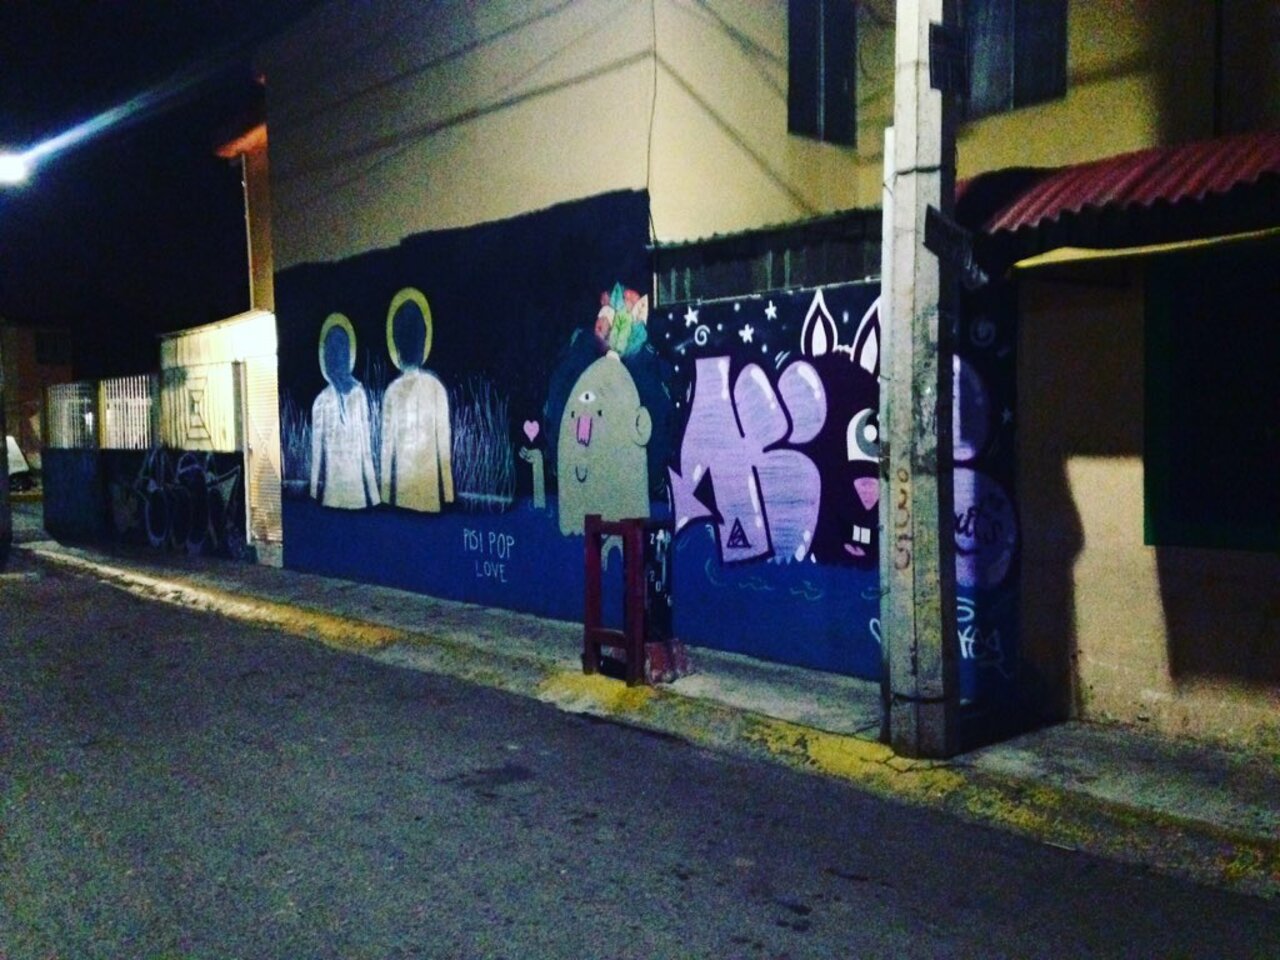 [Todos buscamos el amor en la oscuridad...] #Graffiti #StreetArt #ArteUrbano #ArtDeRue https://instagram.com/p/9Sb3qph5oe/ https://t.co/vQkqTFNl9a